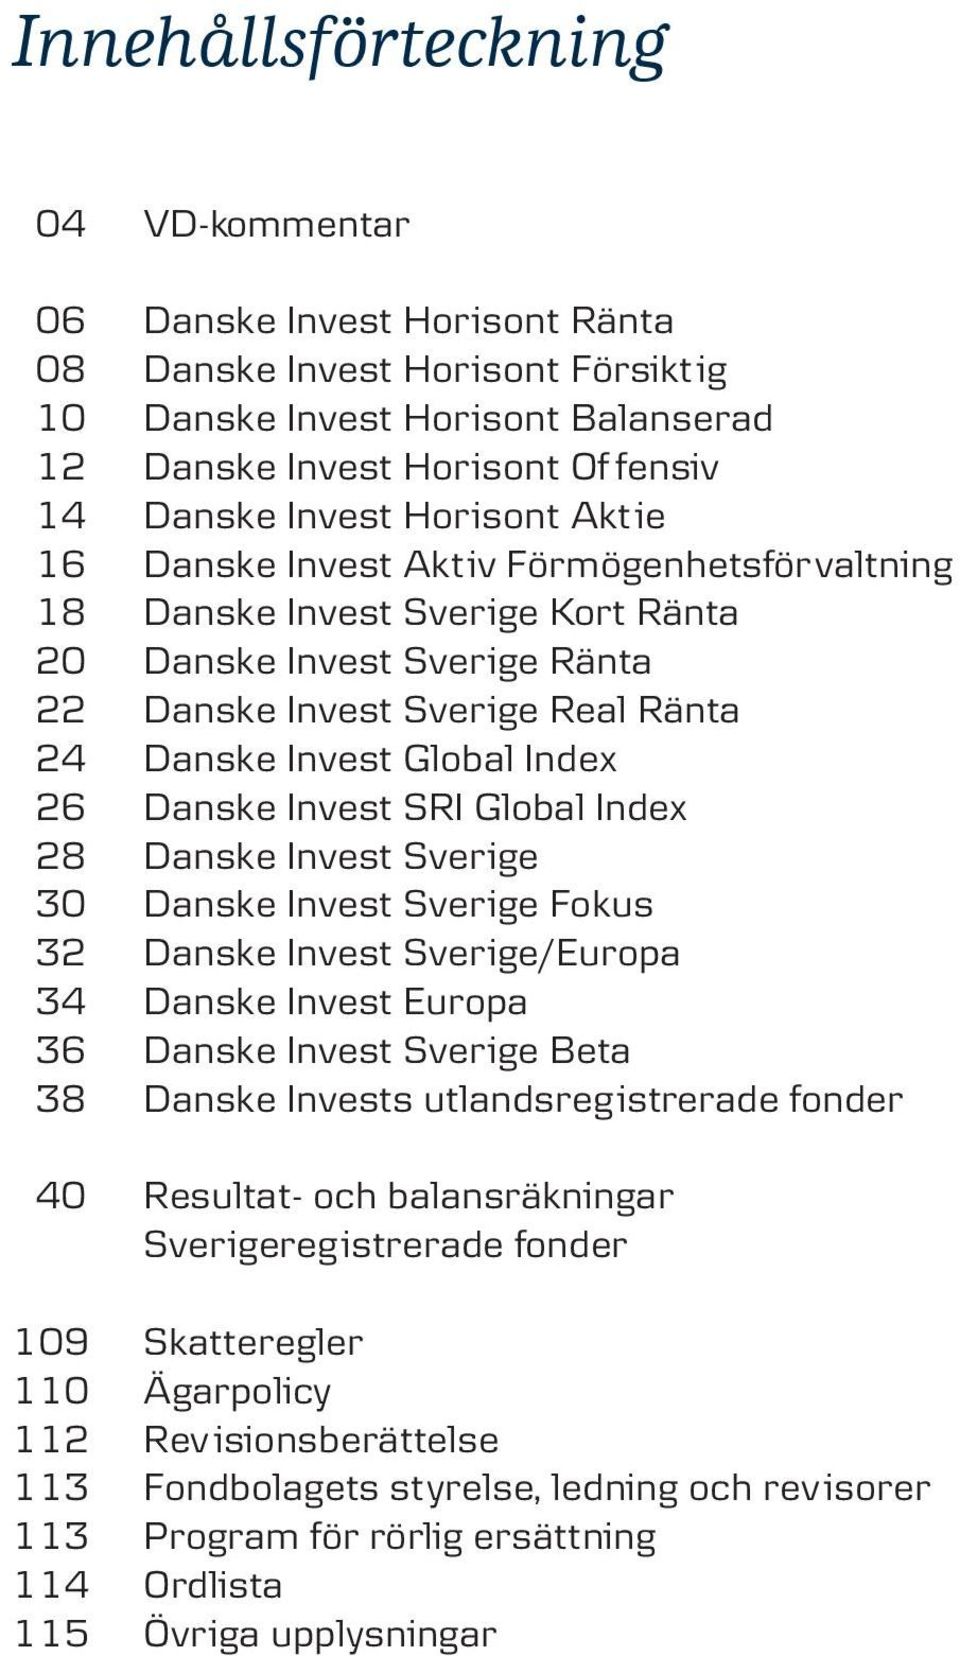 Danske Invest SRI Global Index 28 Danske Invest Sverige 30 Danske Invest Sverige Fokus 32 Danske Invest Sverige/Europa 34 Danske Invest Europa 36 Danske Invest Sverige Beta 38 Danske Invests